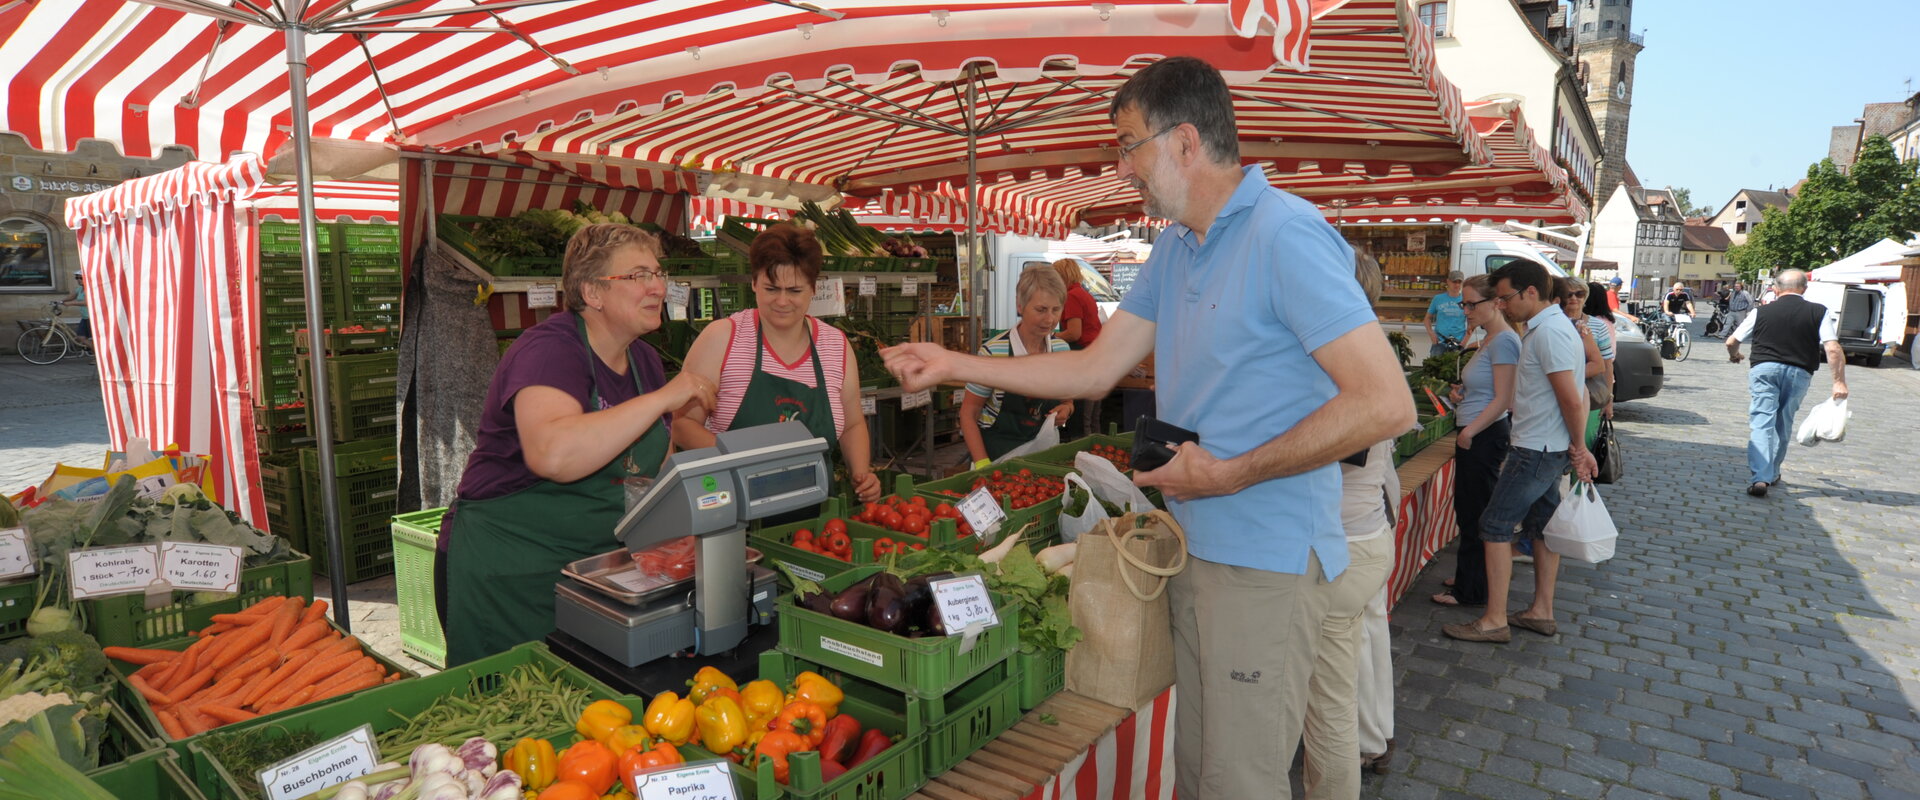 Einkaufen am Gemüsestand auf dem Wochenmarkt in Lauf